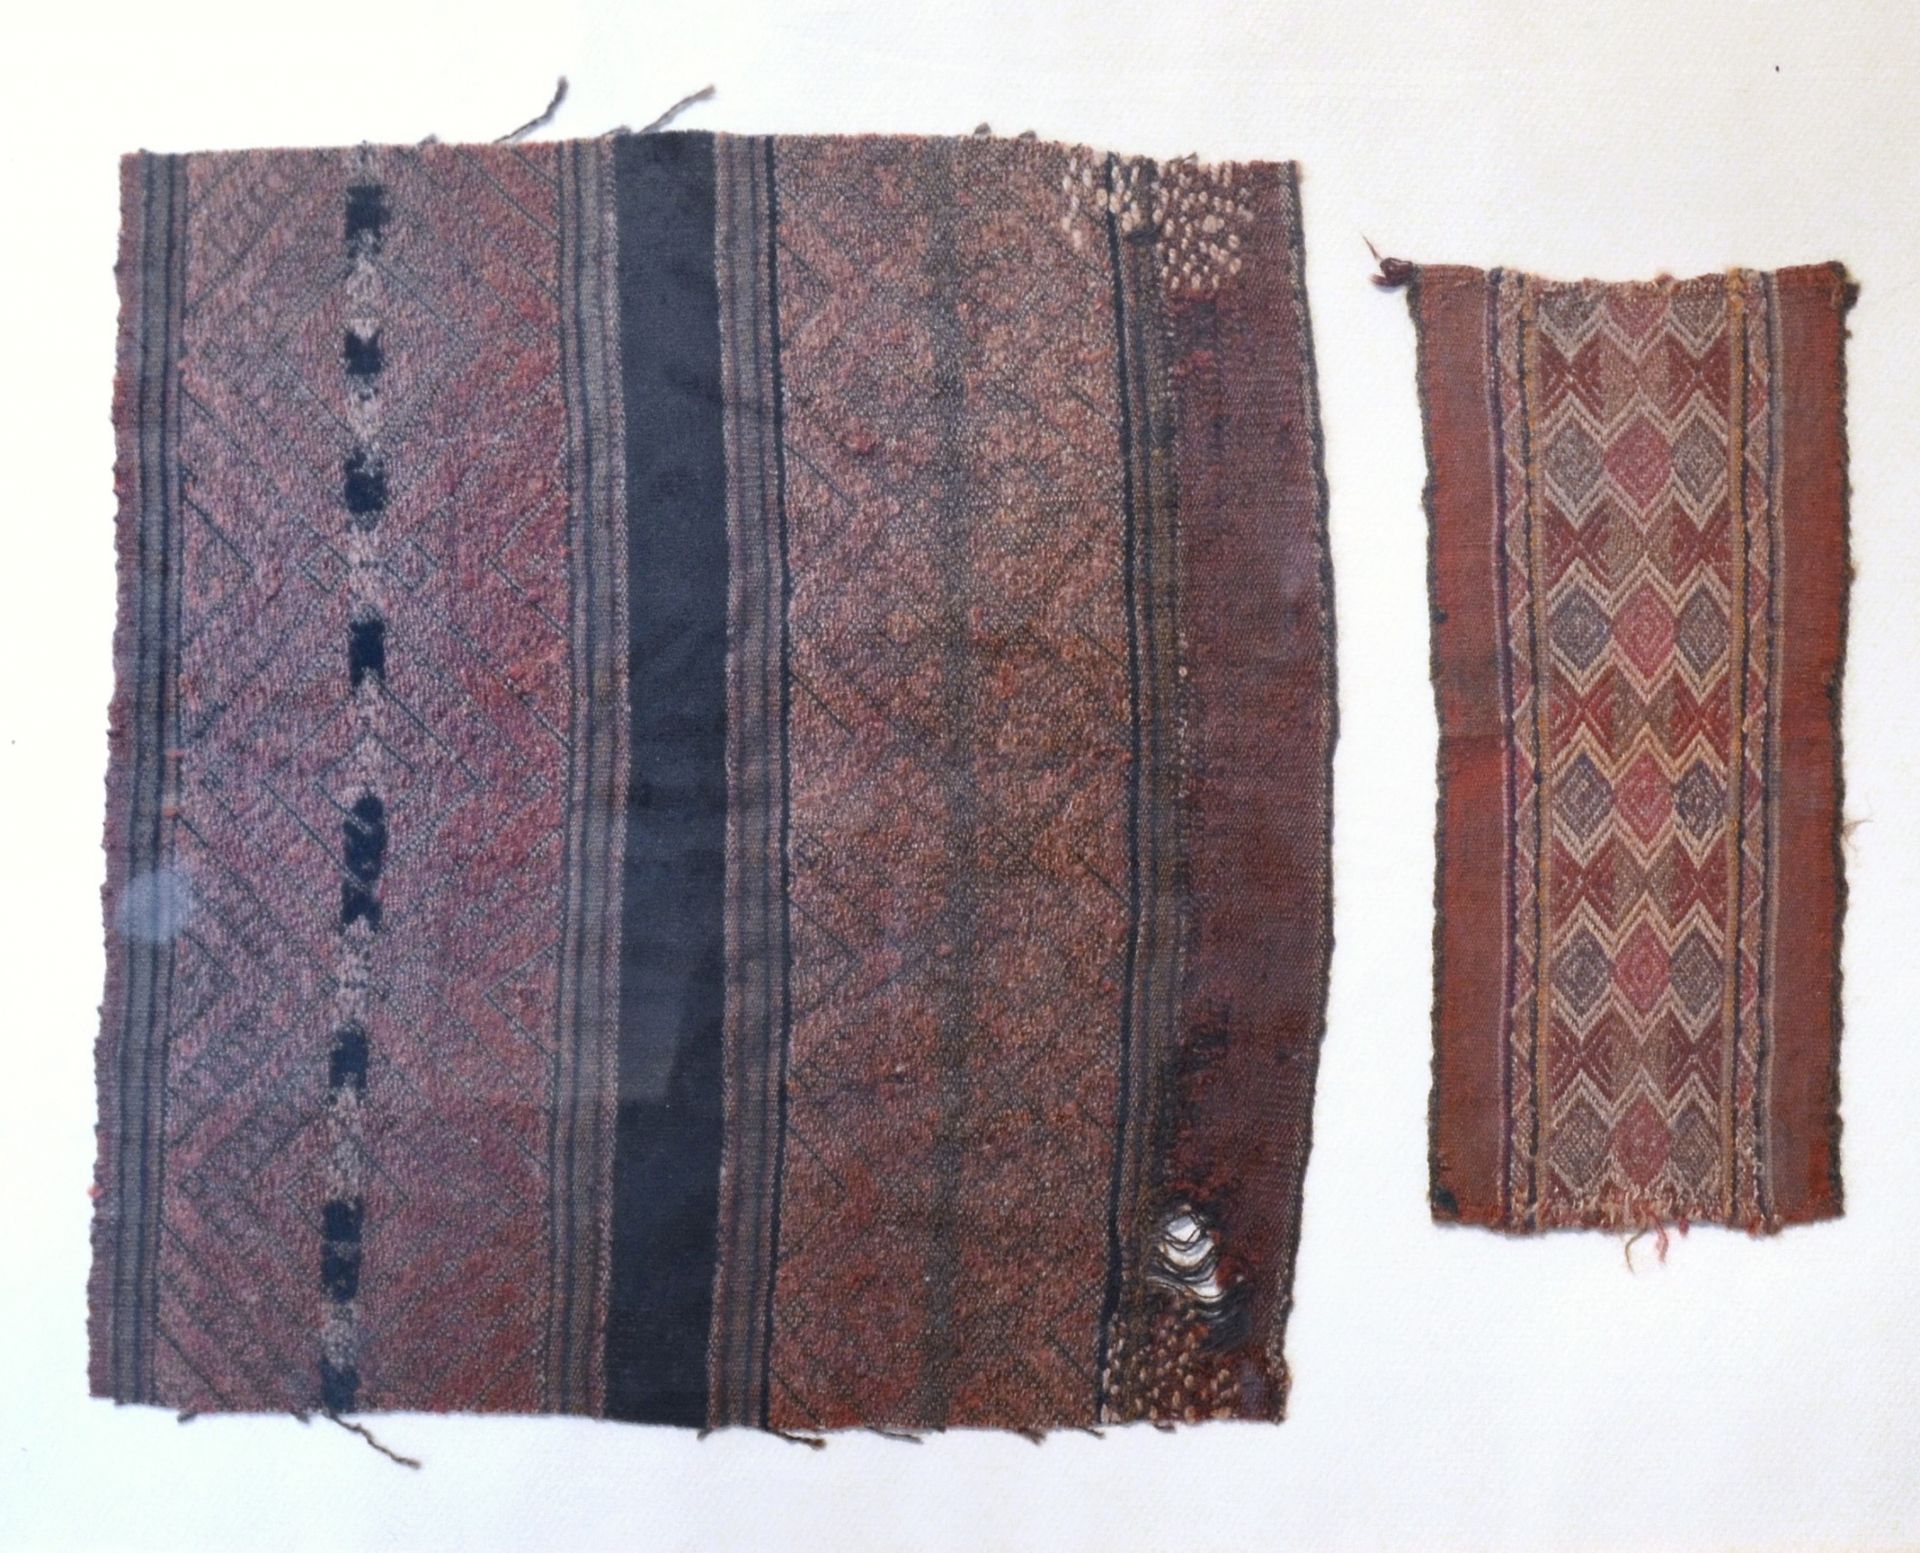 Deux fragments de tissu Ica, Pérou, 1450-1532 après JC

30,5 x 29 cm

22,5 x 10 &hellip;